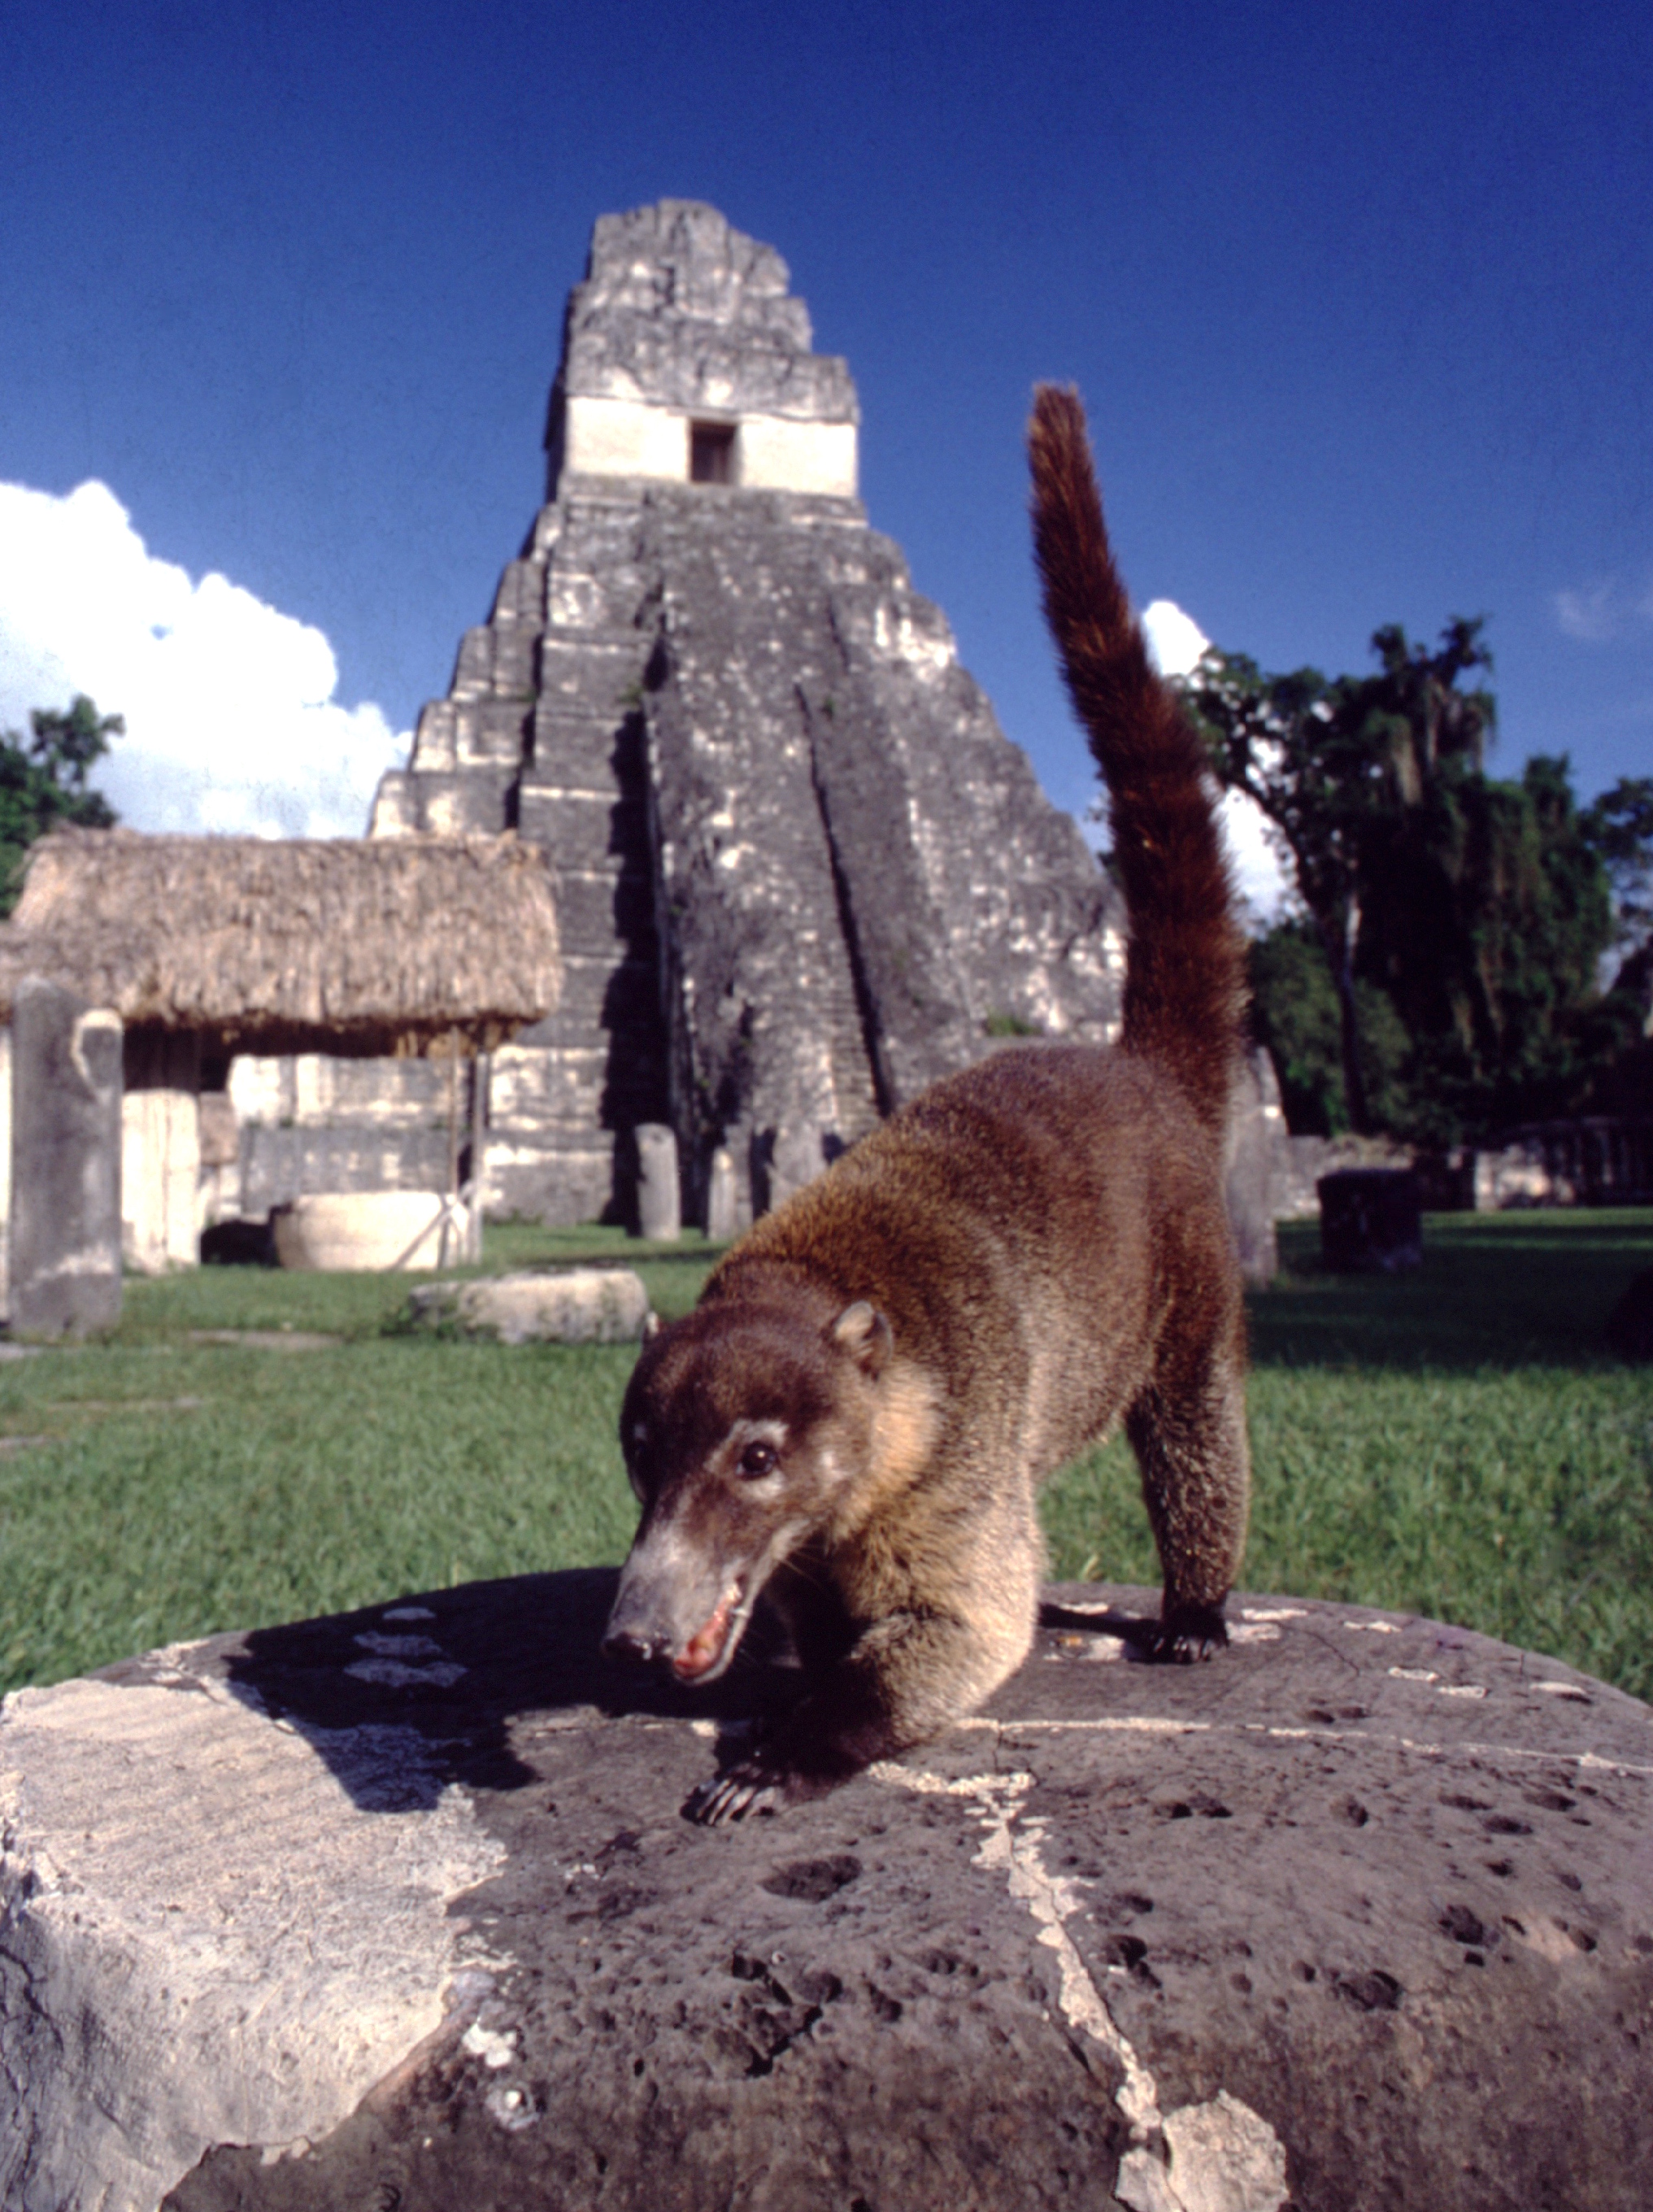 Les ruines de Tikal sont encore vivantes ; la preuve, ce petit coati omnivore, qui n’hésite pas à venir griffer les sacs des touristes transportant leur casse-croûte.